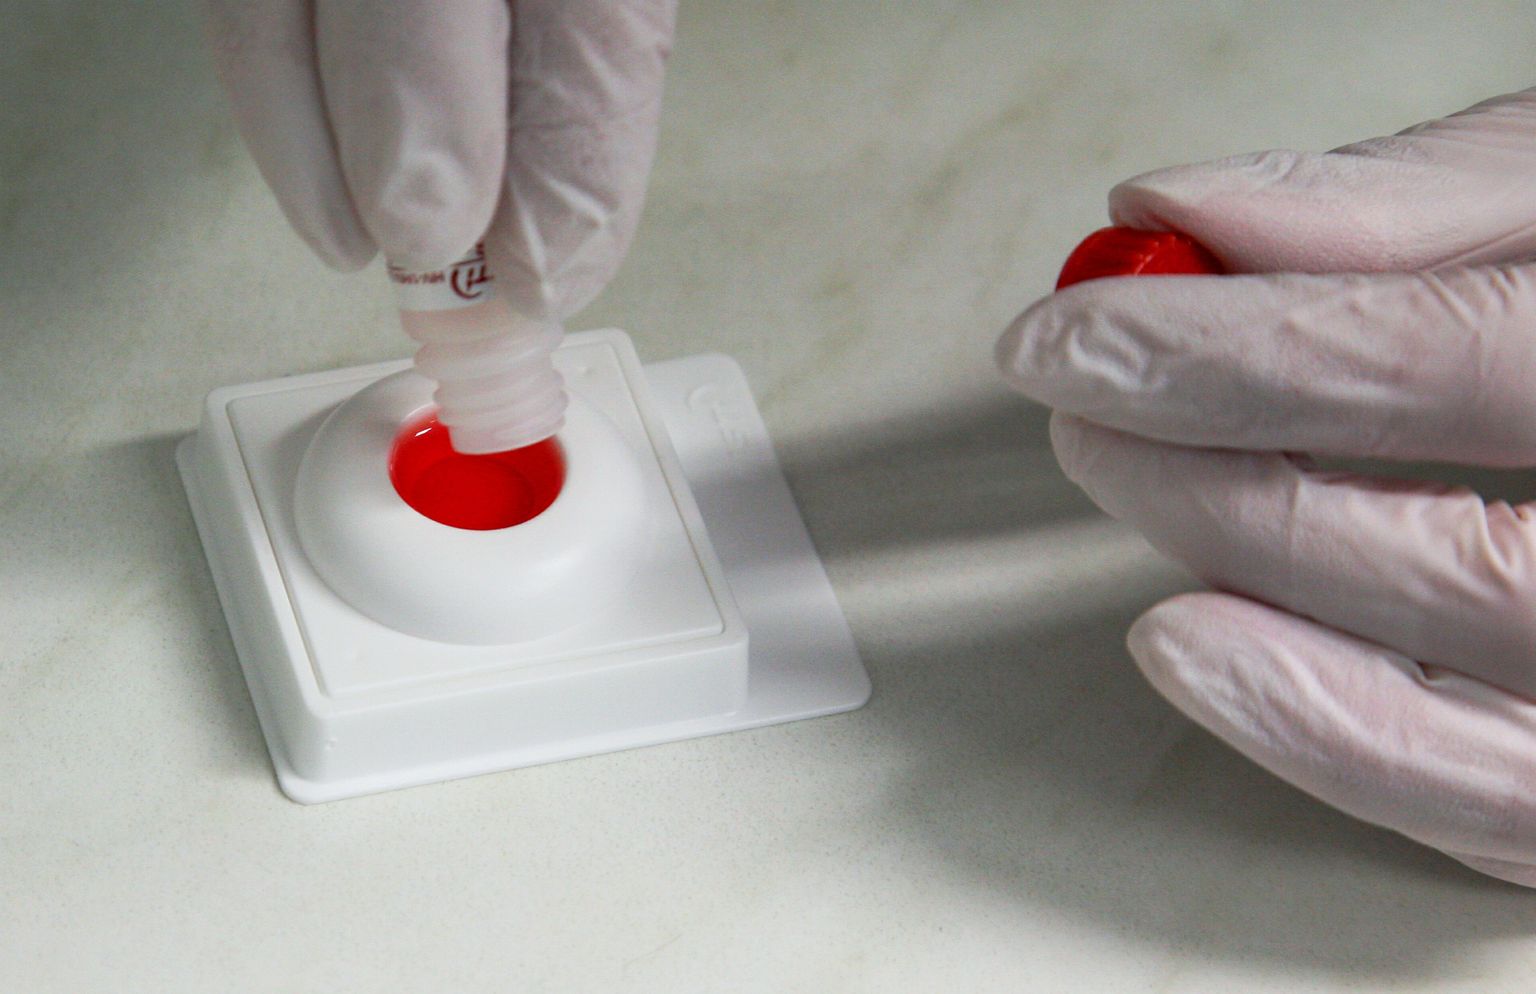 Aidsi kabinet Pärnu haiglas. HIVi kiirtesti komplekt. Pildil verelahuse valamine testrile.